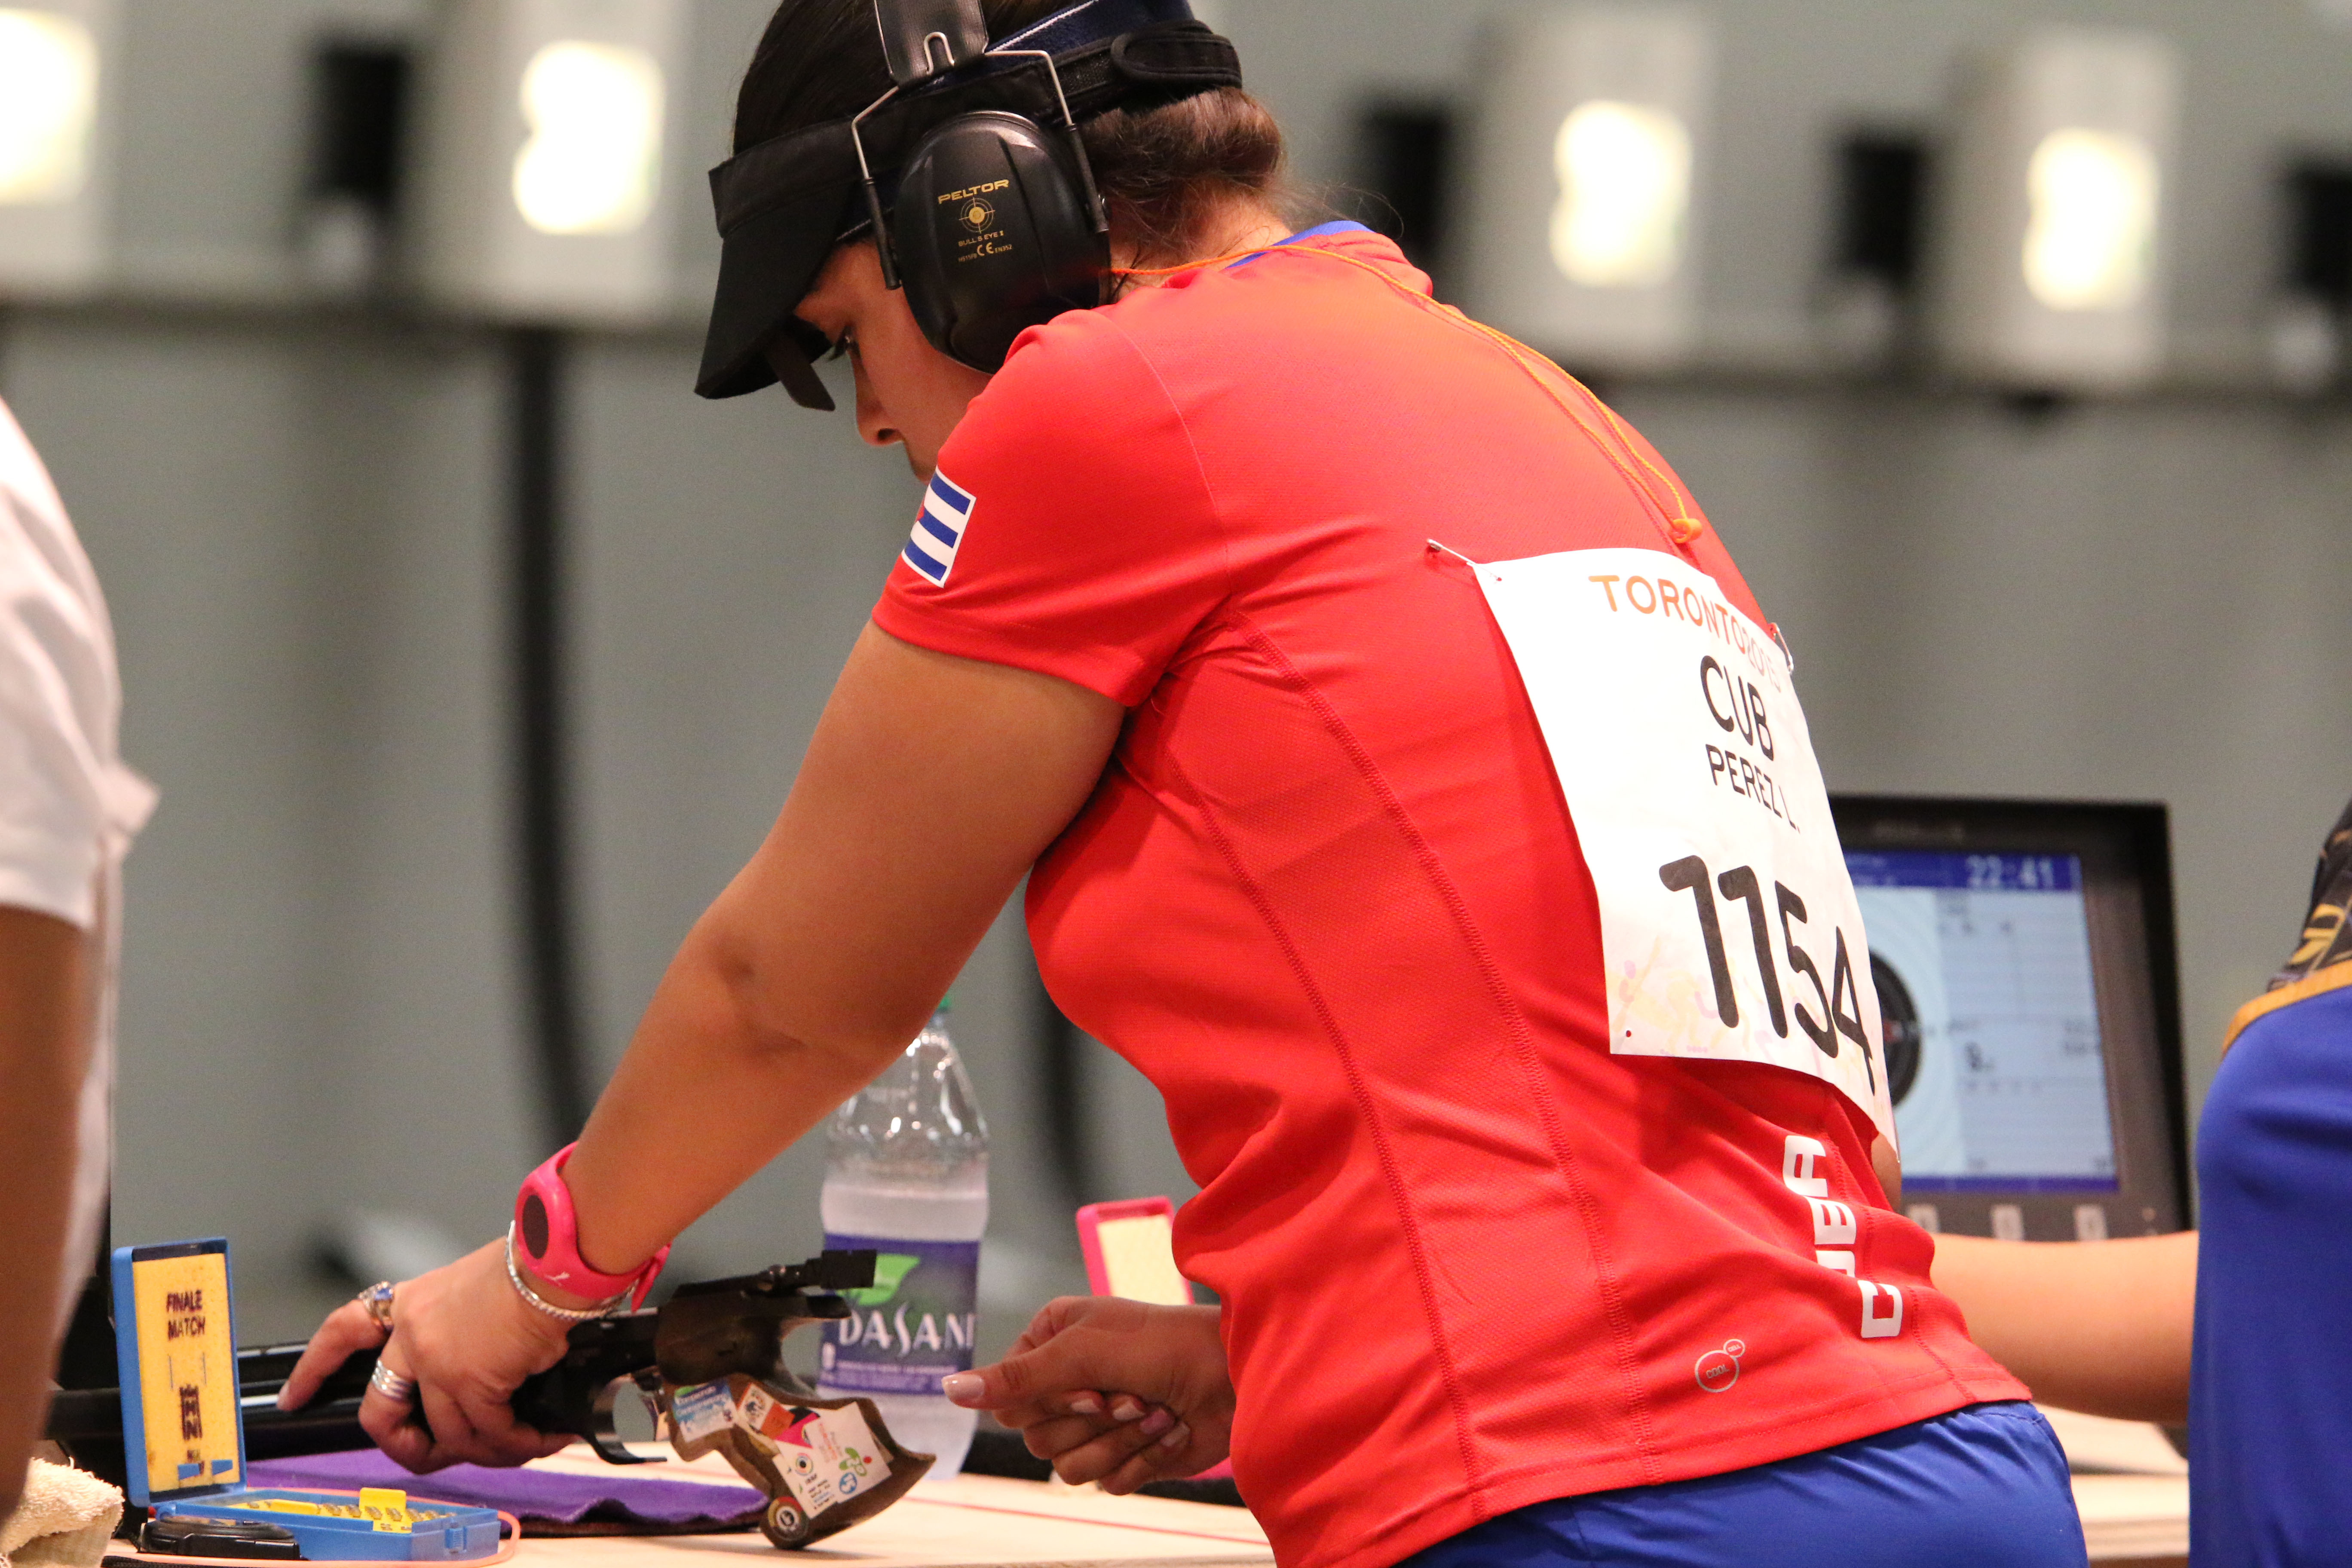 La pistolera cubana durante la competencia en Toronto 2015. Foto: José Luis Anaya.